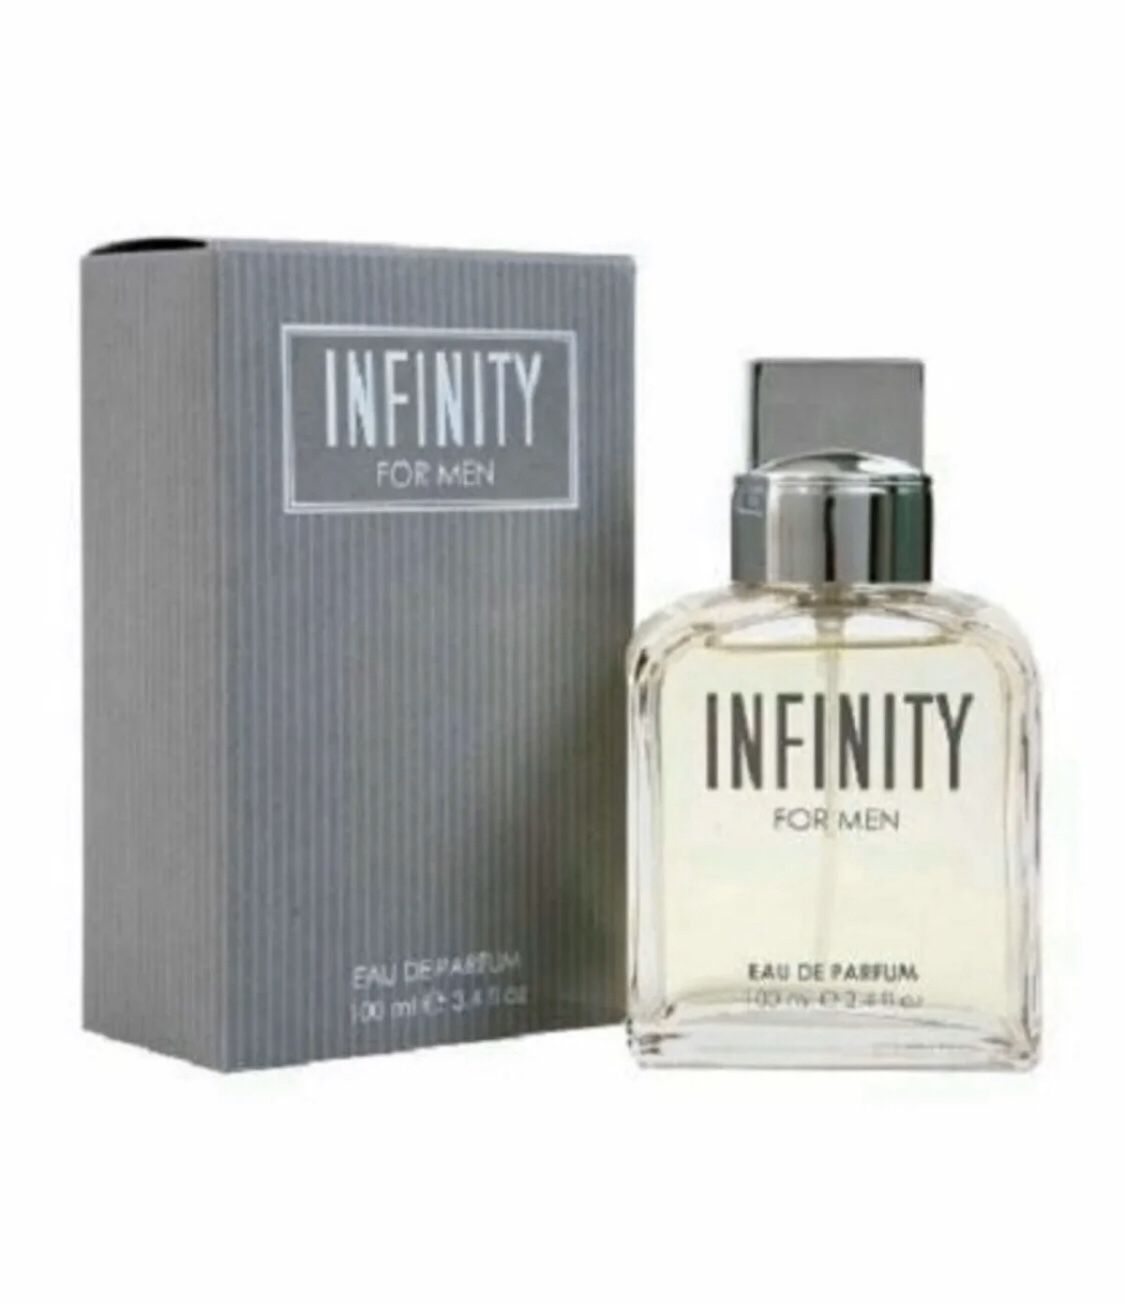 Infinity For Men 3.4oz Eau De Perfum